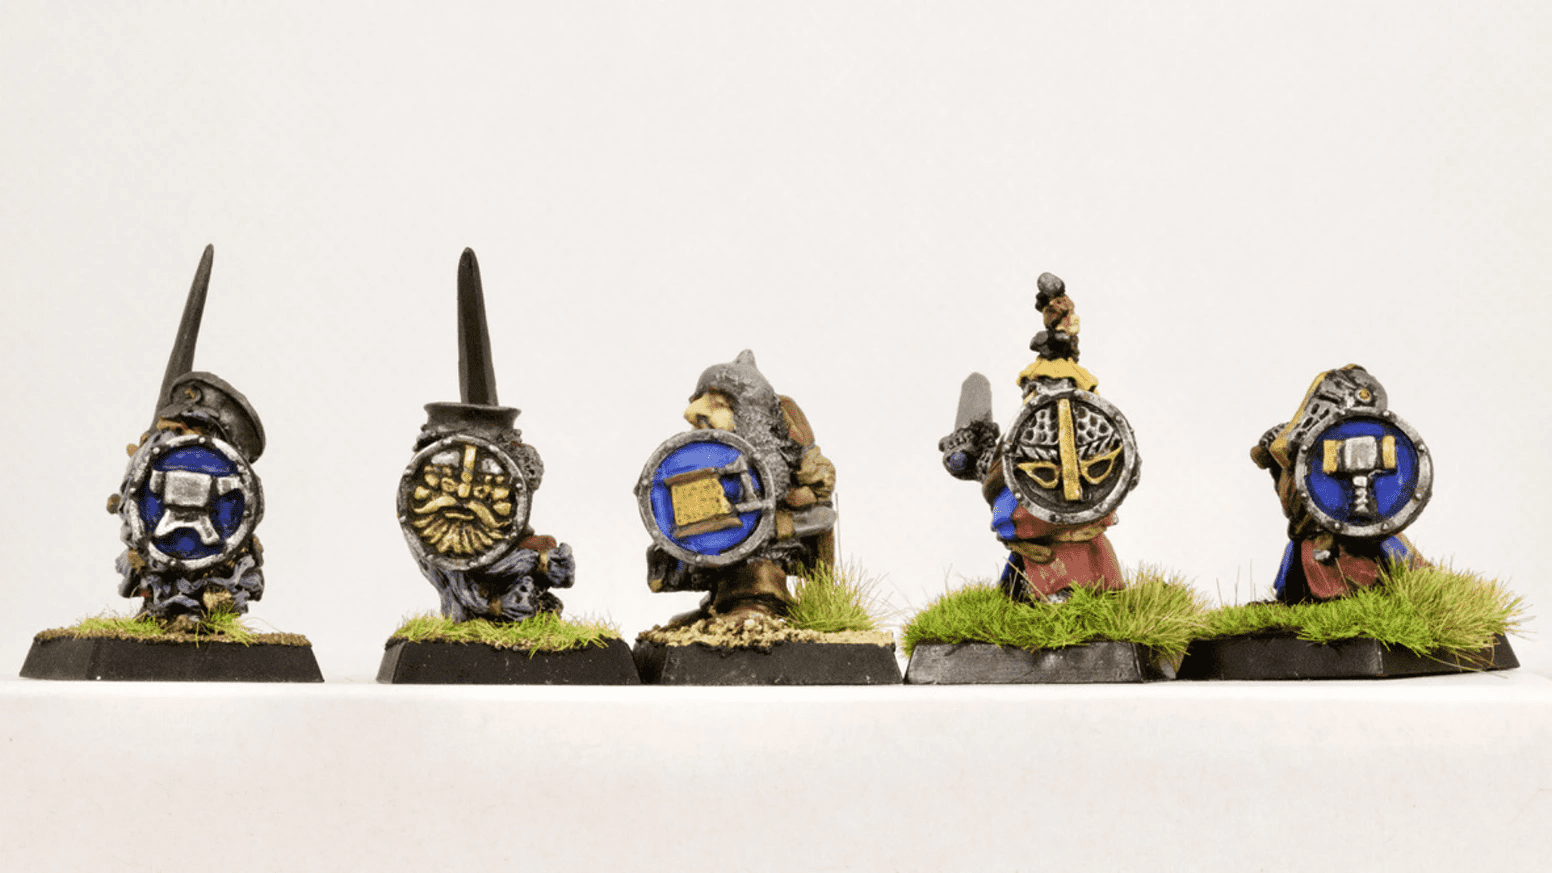 Dwarf Shields